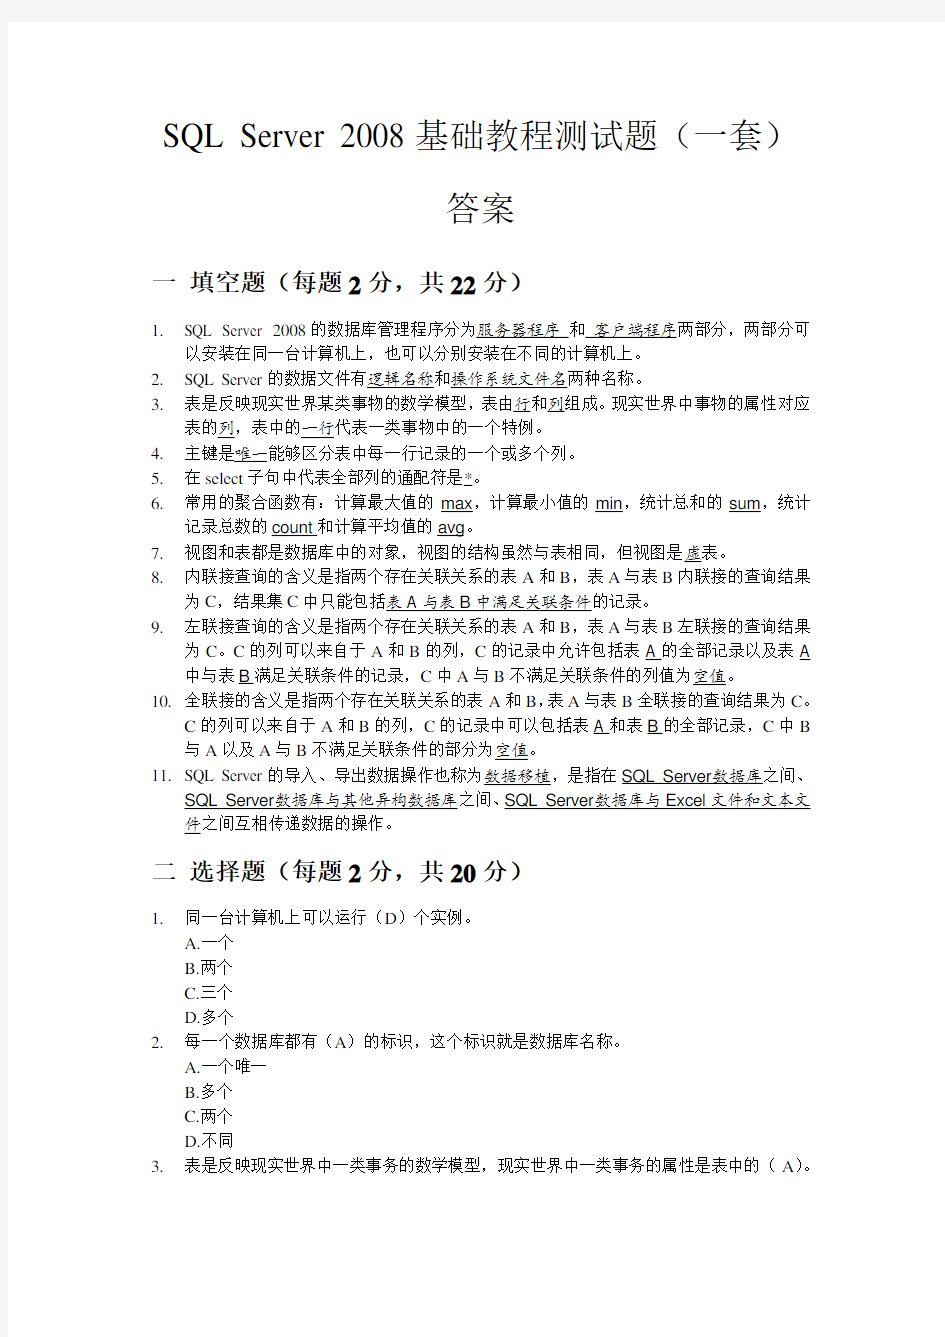 SQL Server 2008中文版基础教程测试题(一套)答案